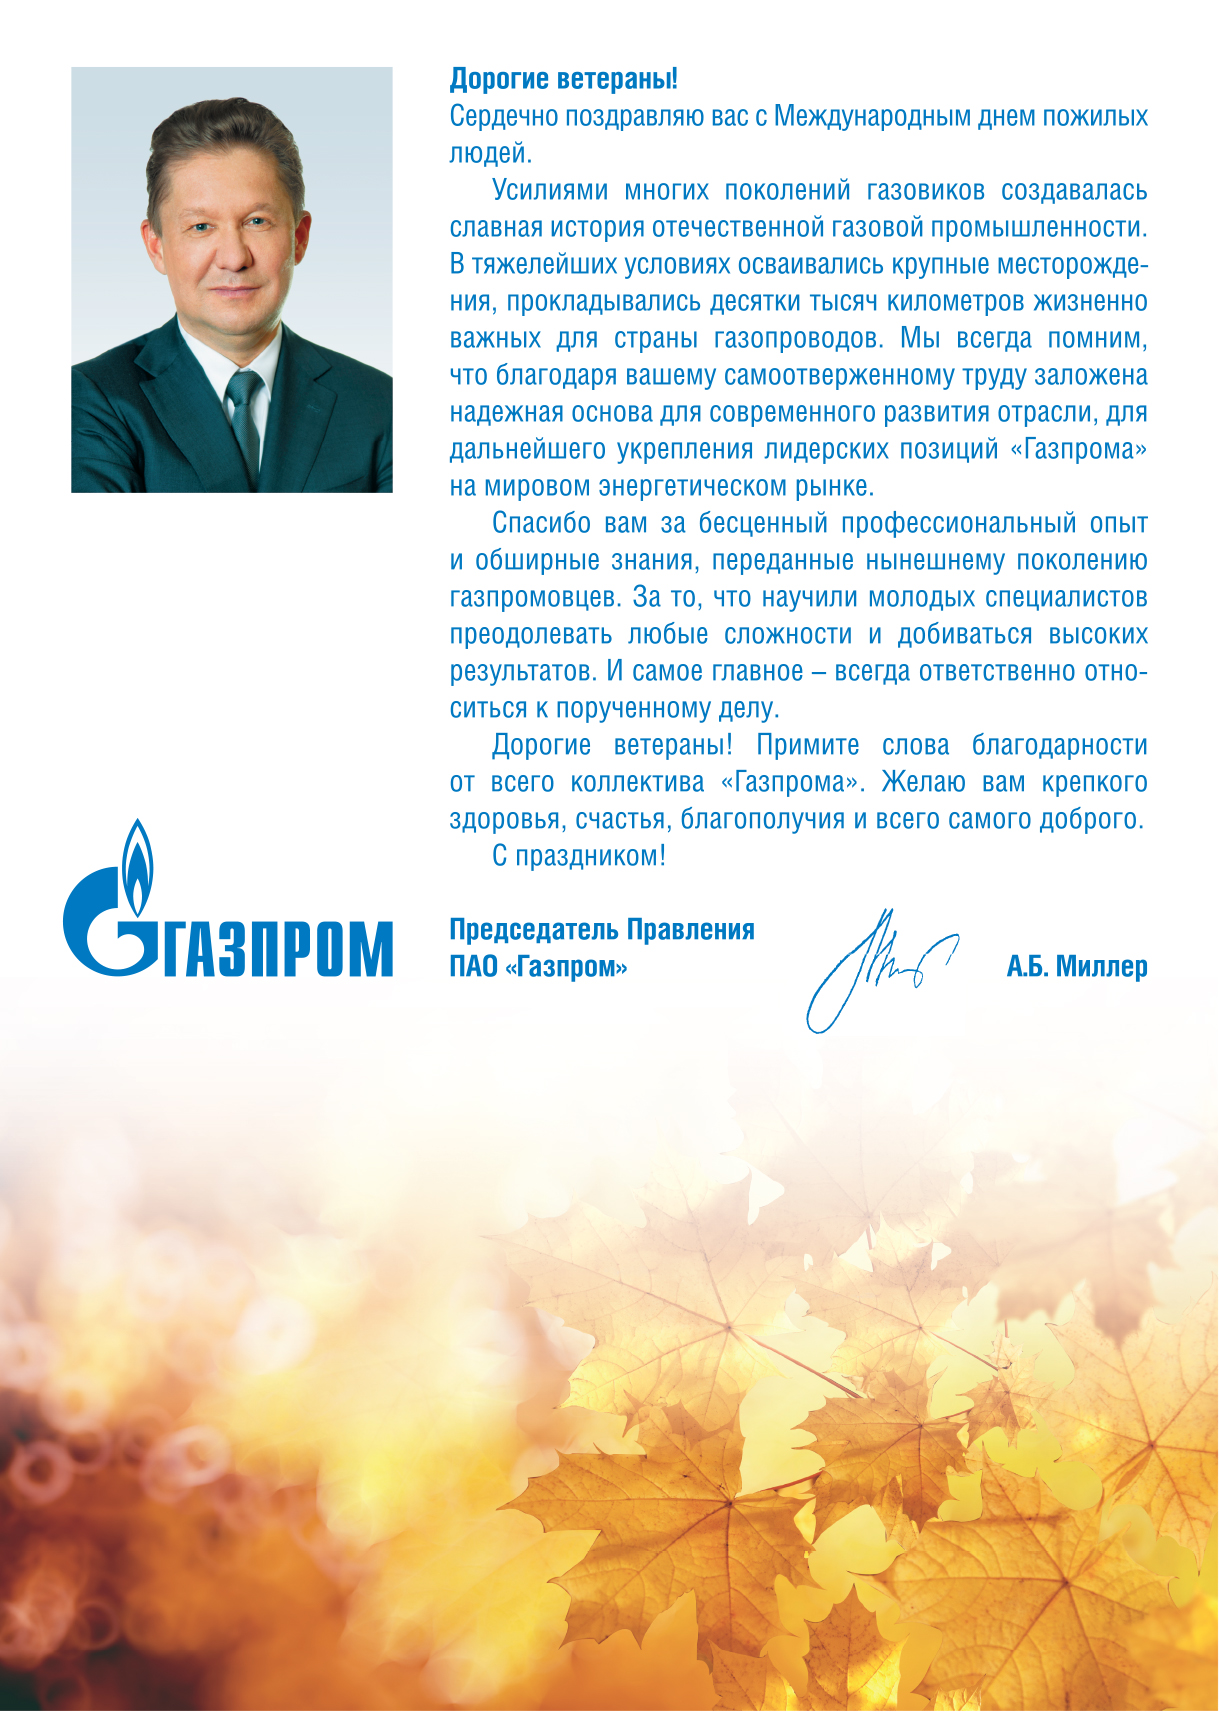 Письмо миллеру. Поздравление с днем рождения директора Газпрома. Поздравление с днем Газпрома.